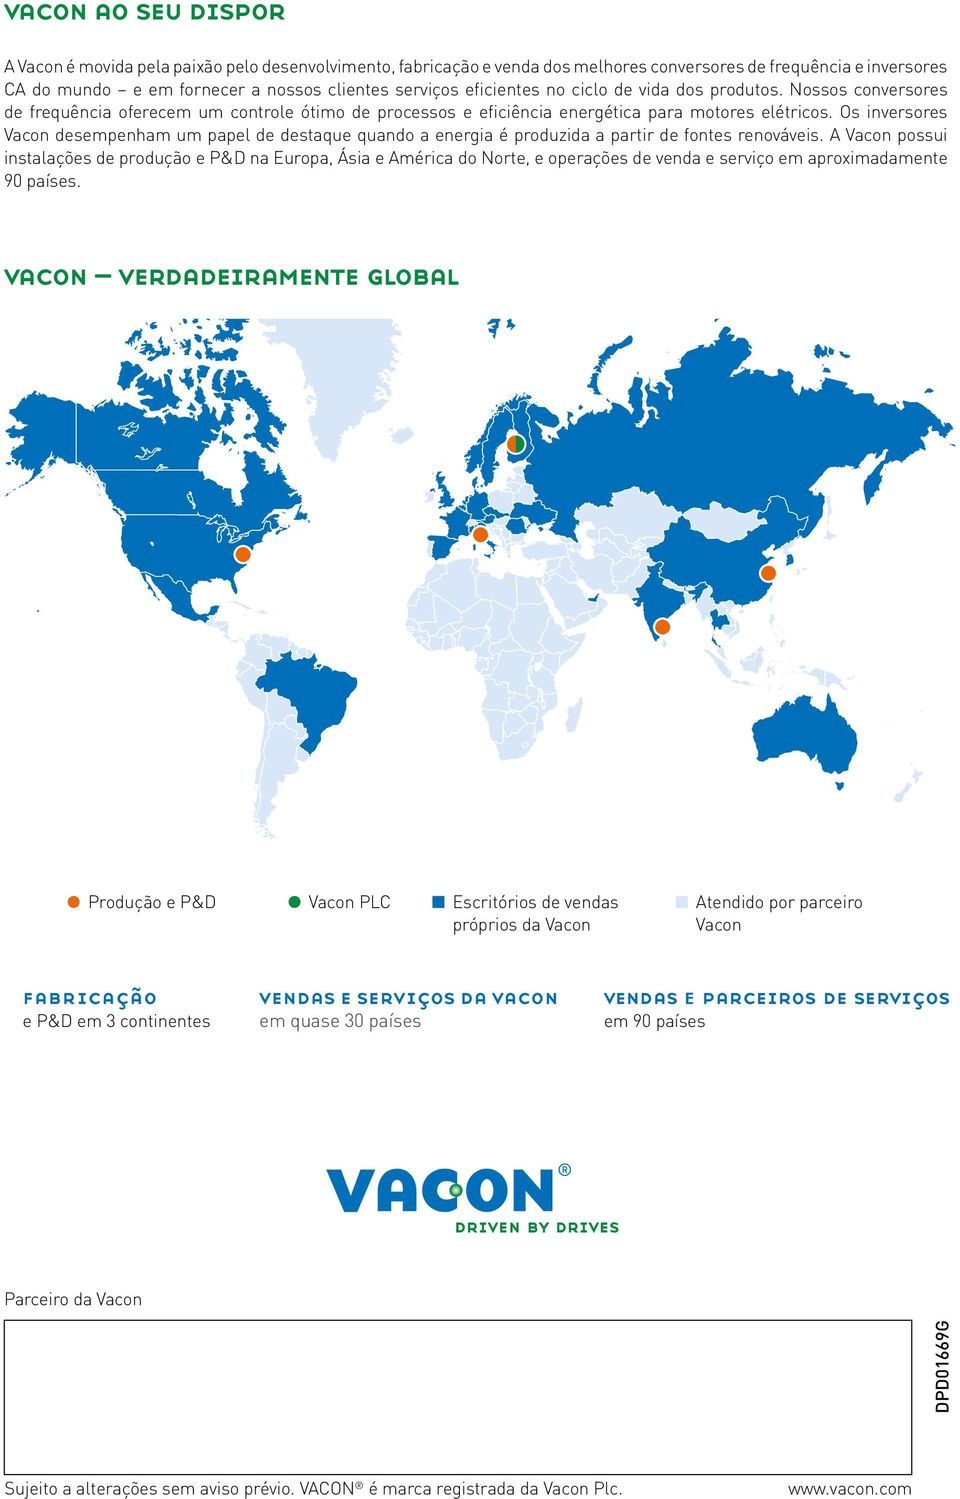 Os inversores Vacon desempenham um papel de destaque quando a energia é produzida a partir de fontes renováveis.